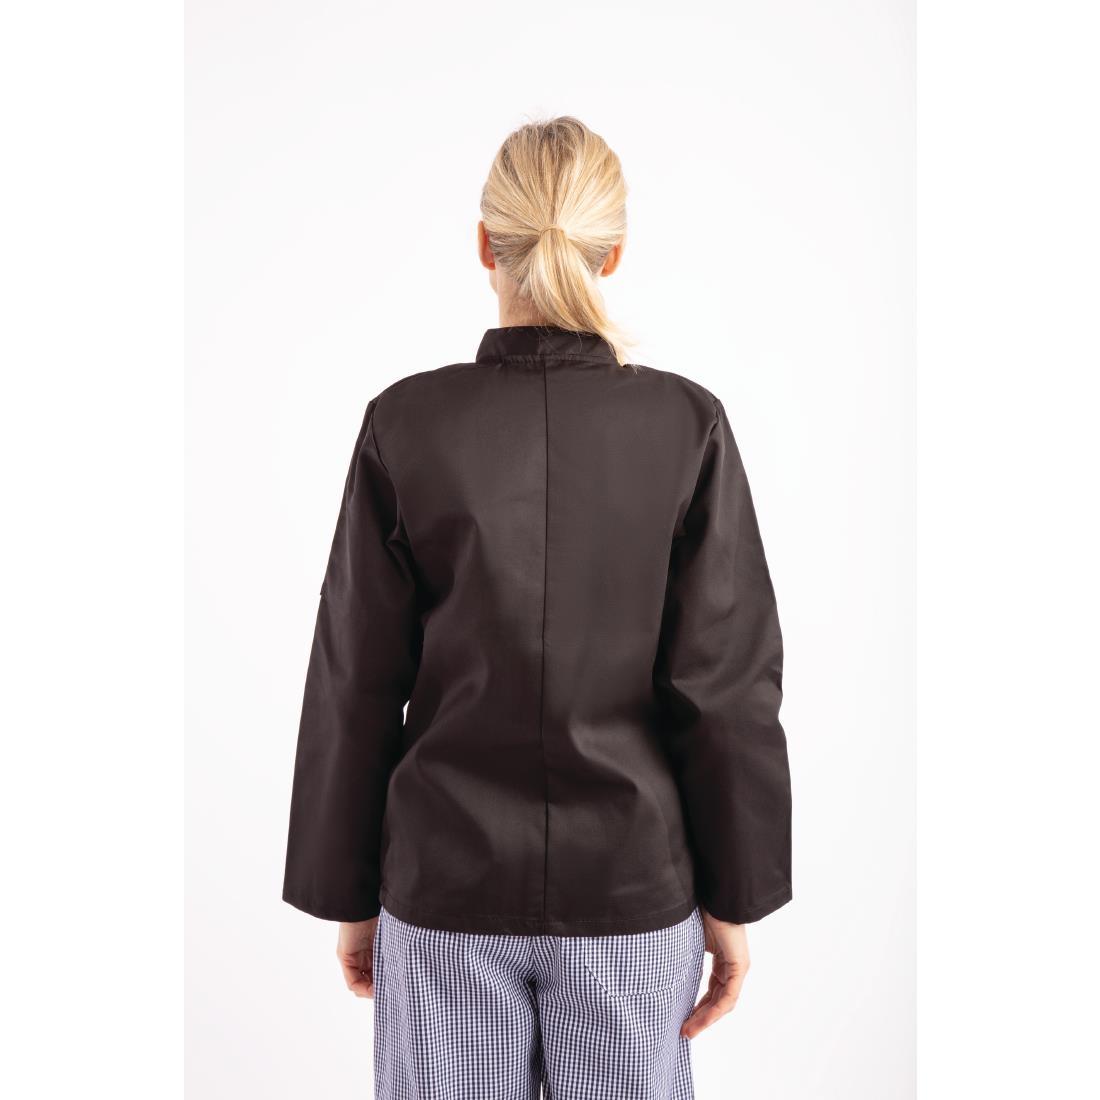 Whites Vegas Unisex Chefs Jacket Long Sleeve Black XL - A438-XL  - 10